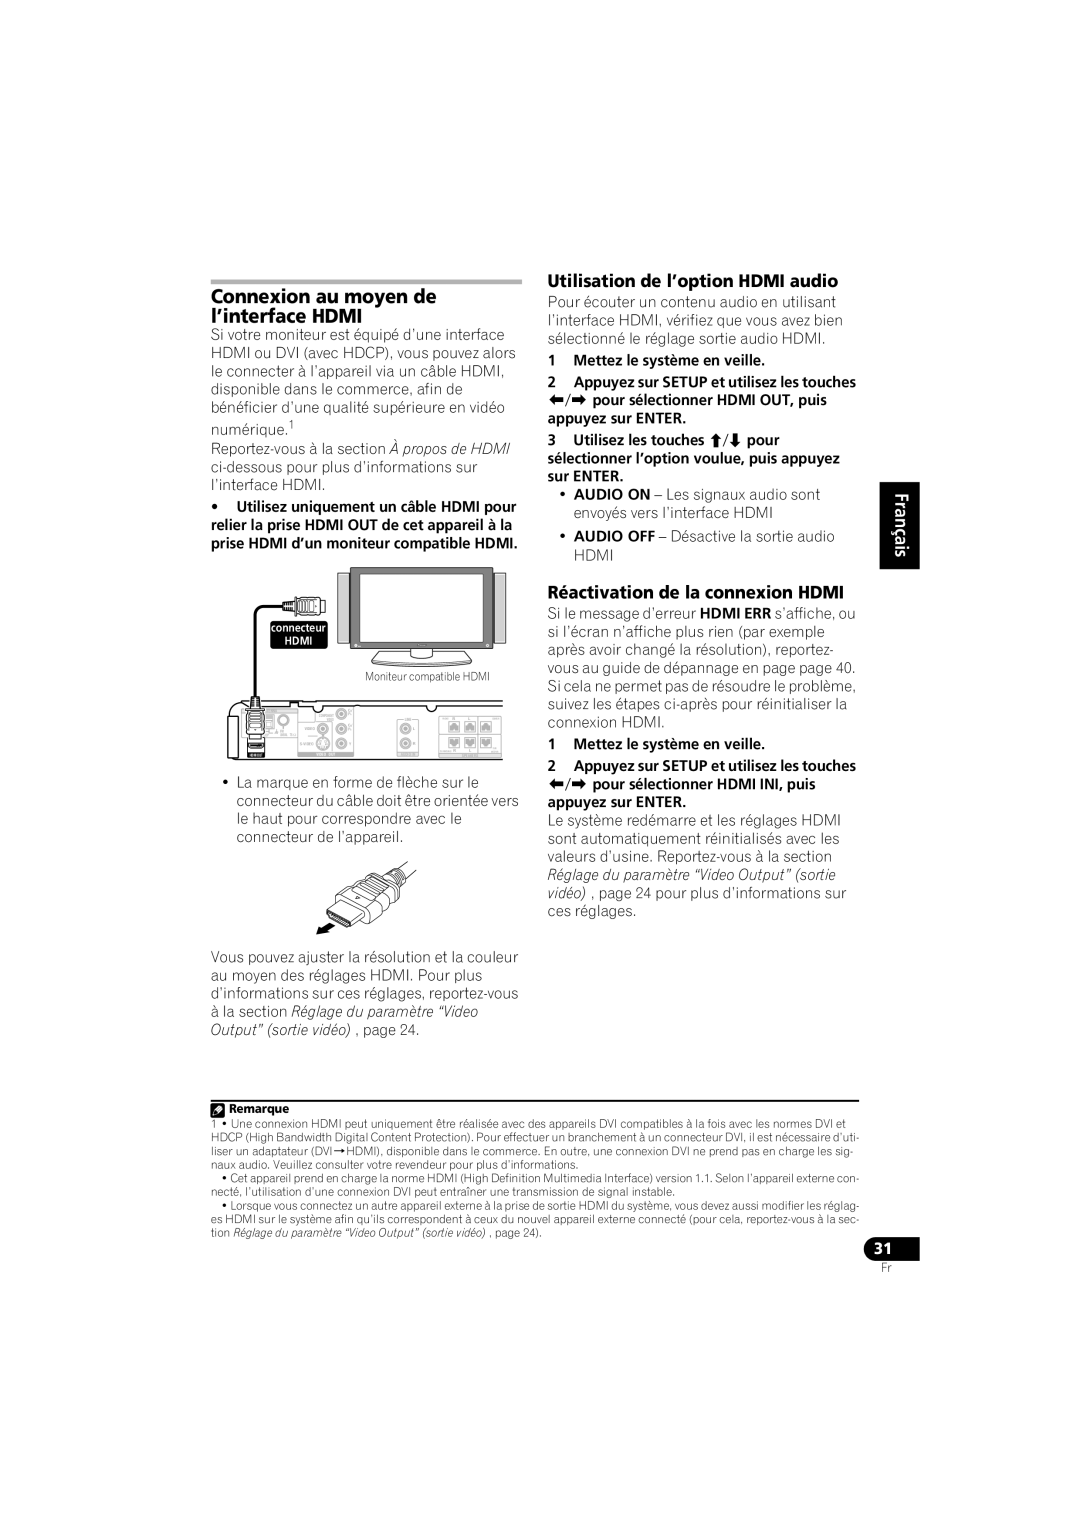 Pioneer HTZ-360DV manual Connexion au moyen de l’interface HDMI, Utilisation de l’option HDMI audio, English Français 